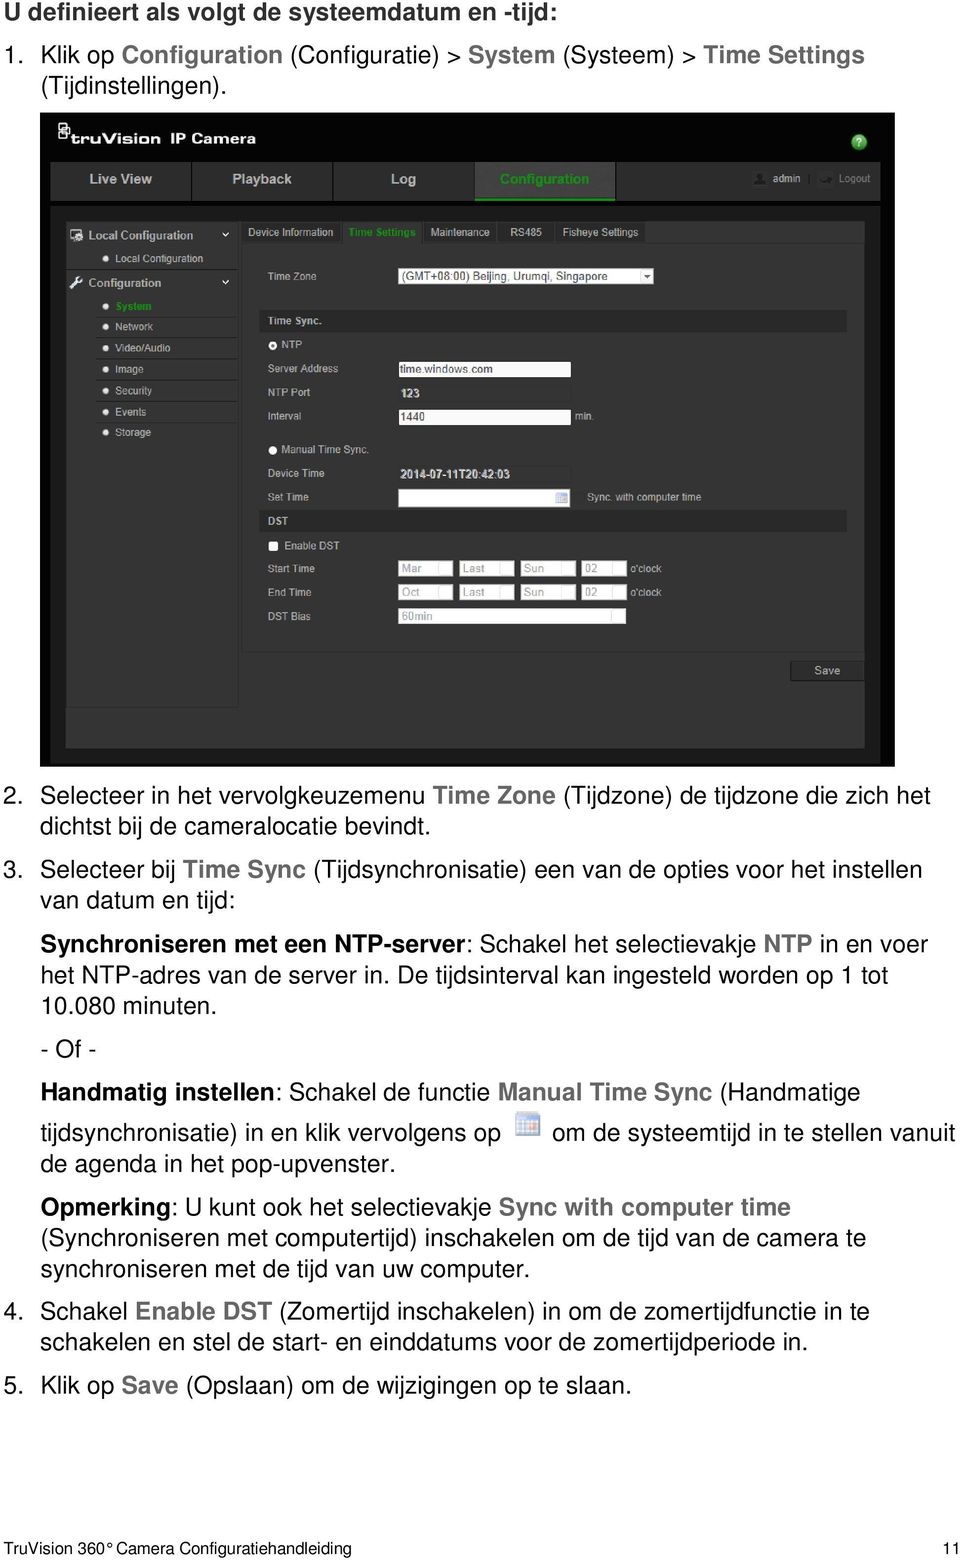 Selecteer bij Time Sync (Tijdsynchronisatie) een van de opties voor het instellen van datum en tijd: Synchroniseren met een NTP-server: Schakel het selectievakje NTP in en voer het NTP-adres van de